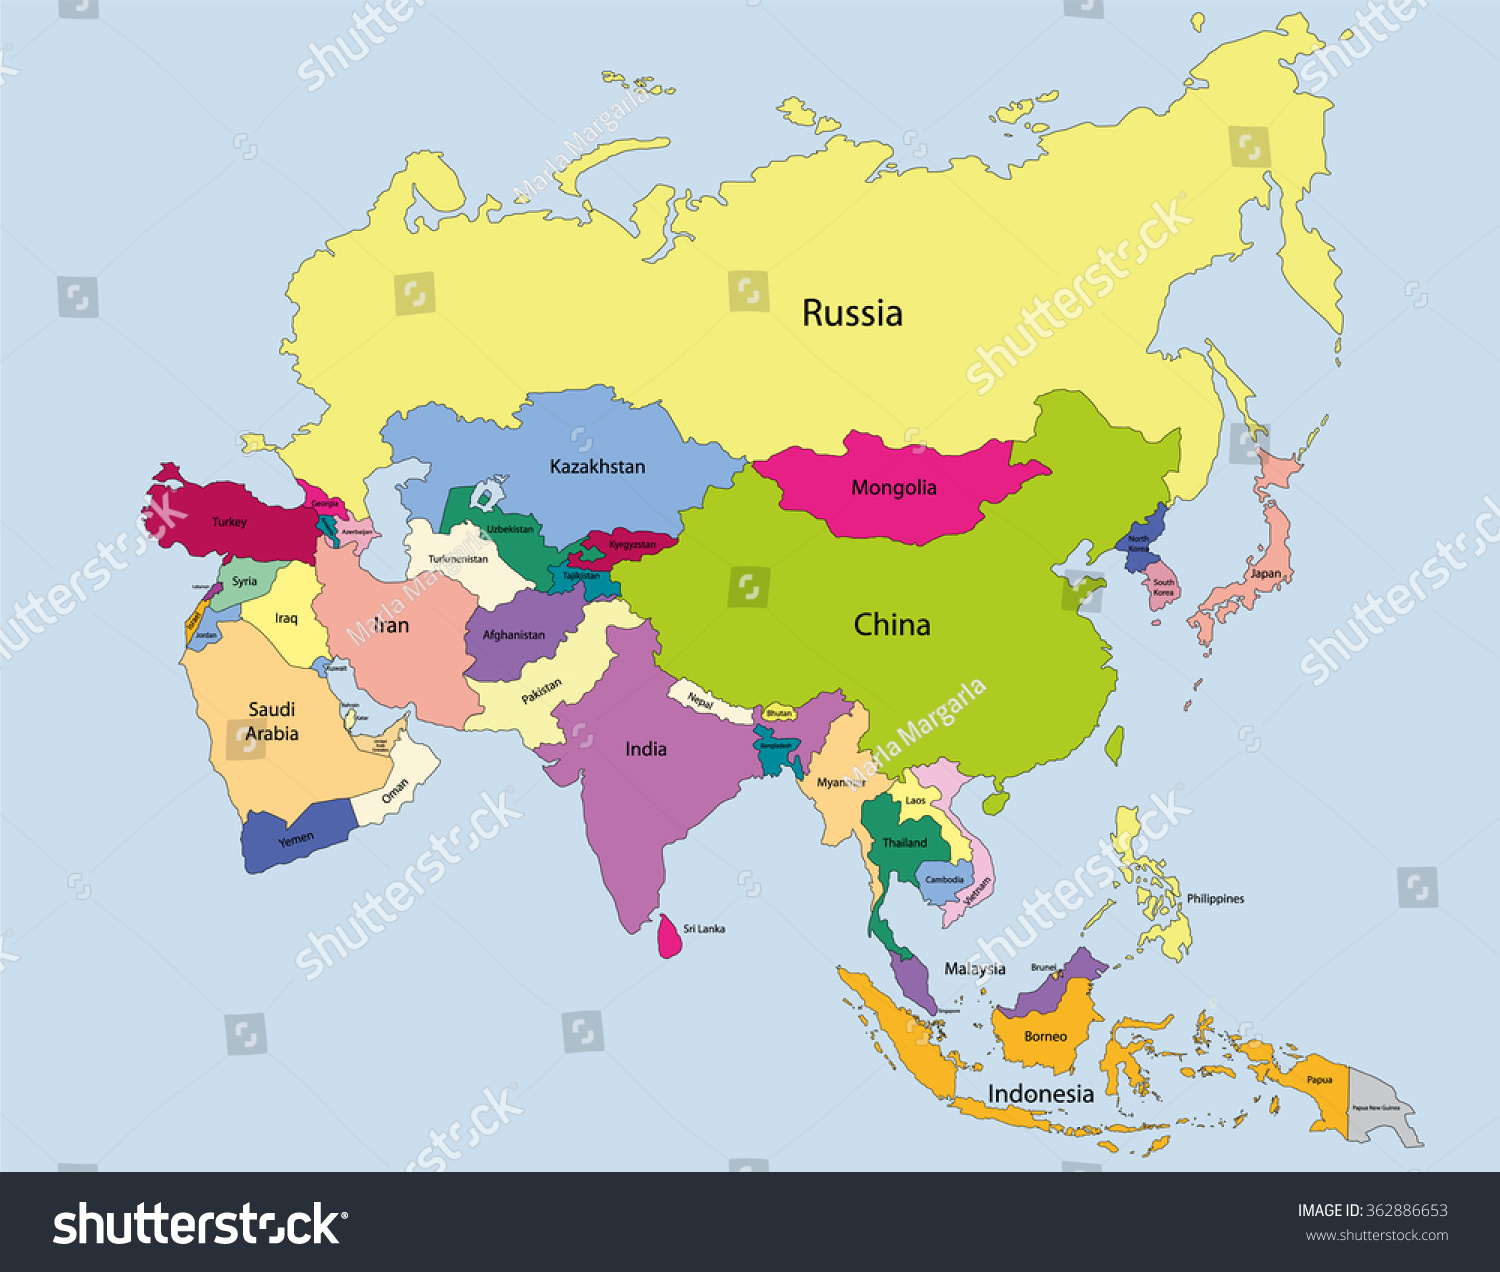 Asia на русском. Политическая карта Азии. Карта Азии на русском языке со странами.